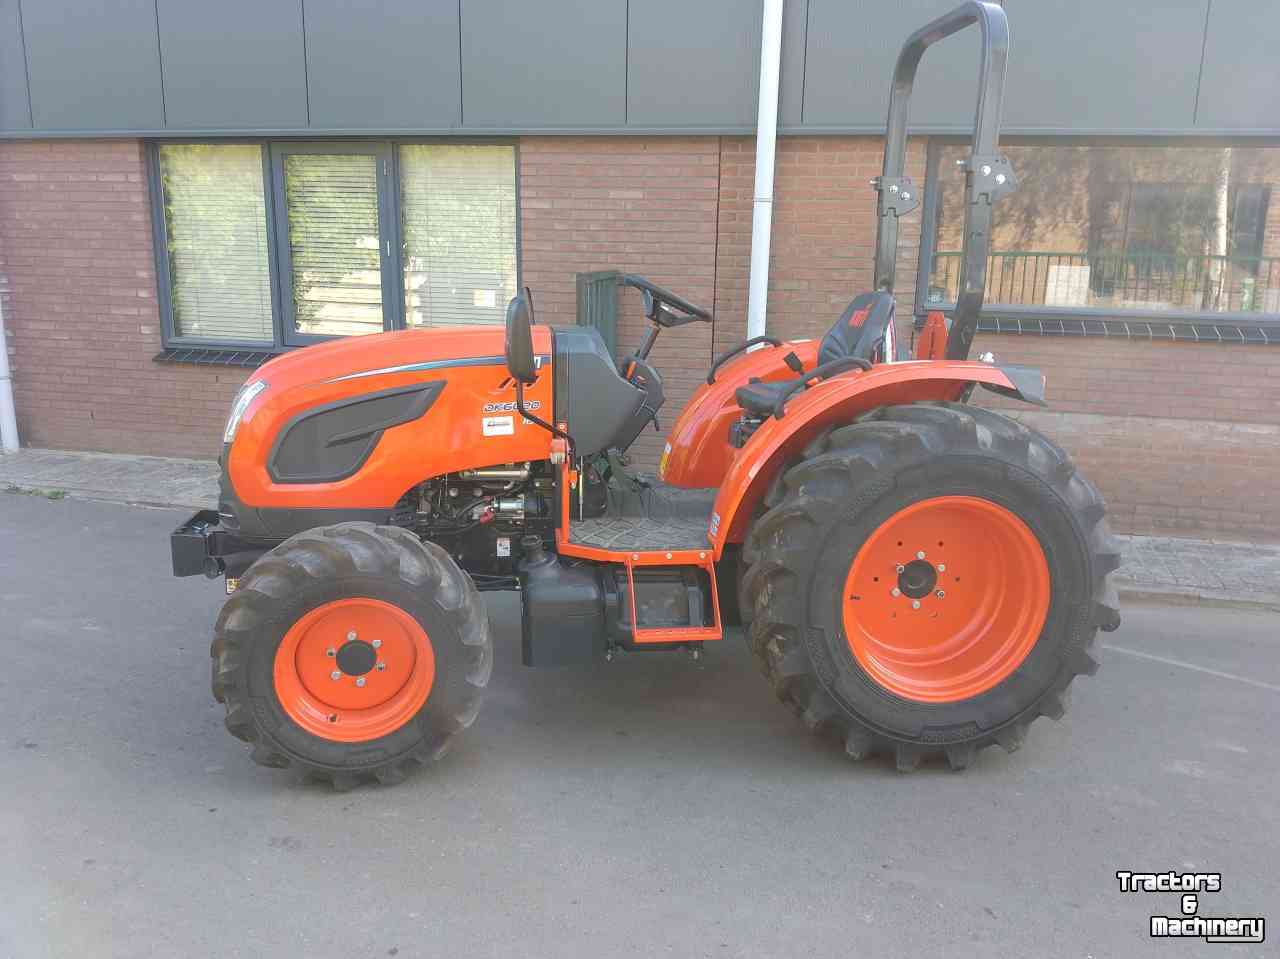 Schlepper / Traktoren Kioti DK 6020 Hst